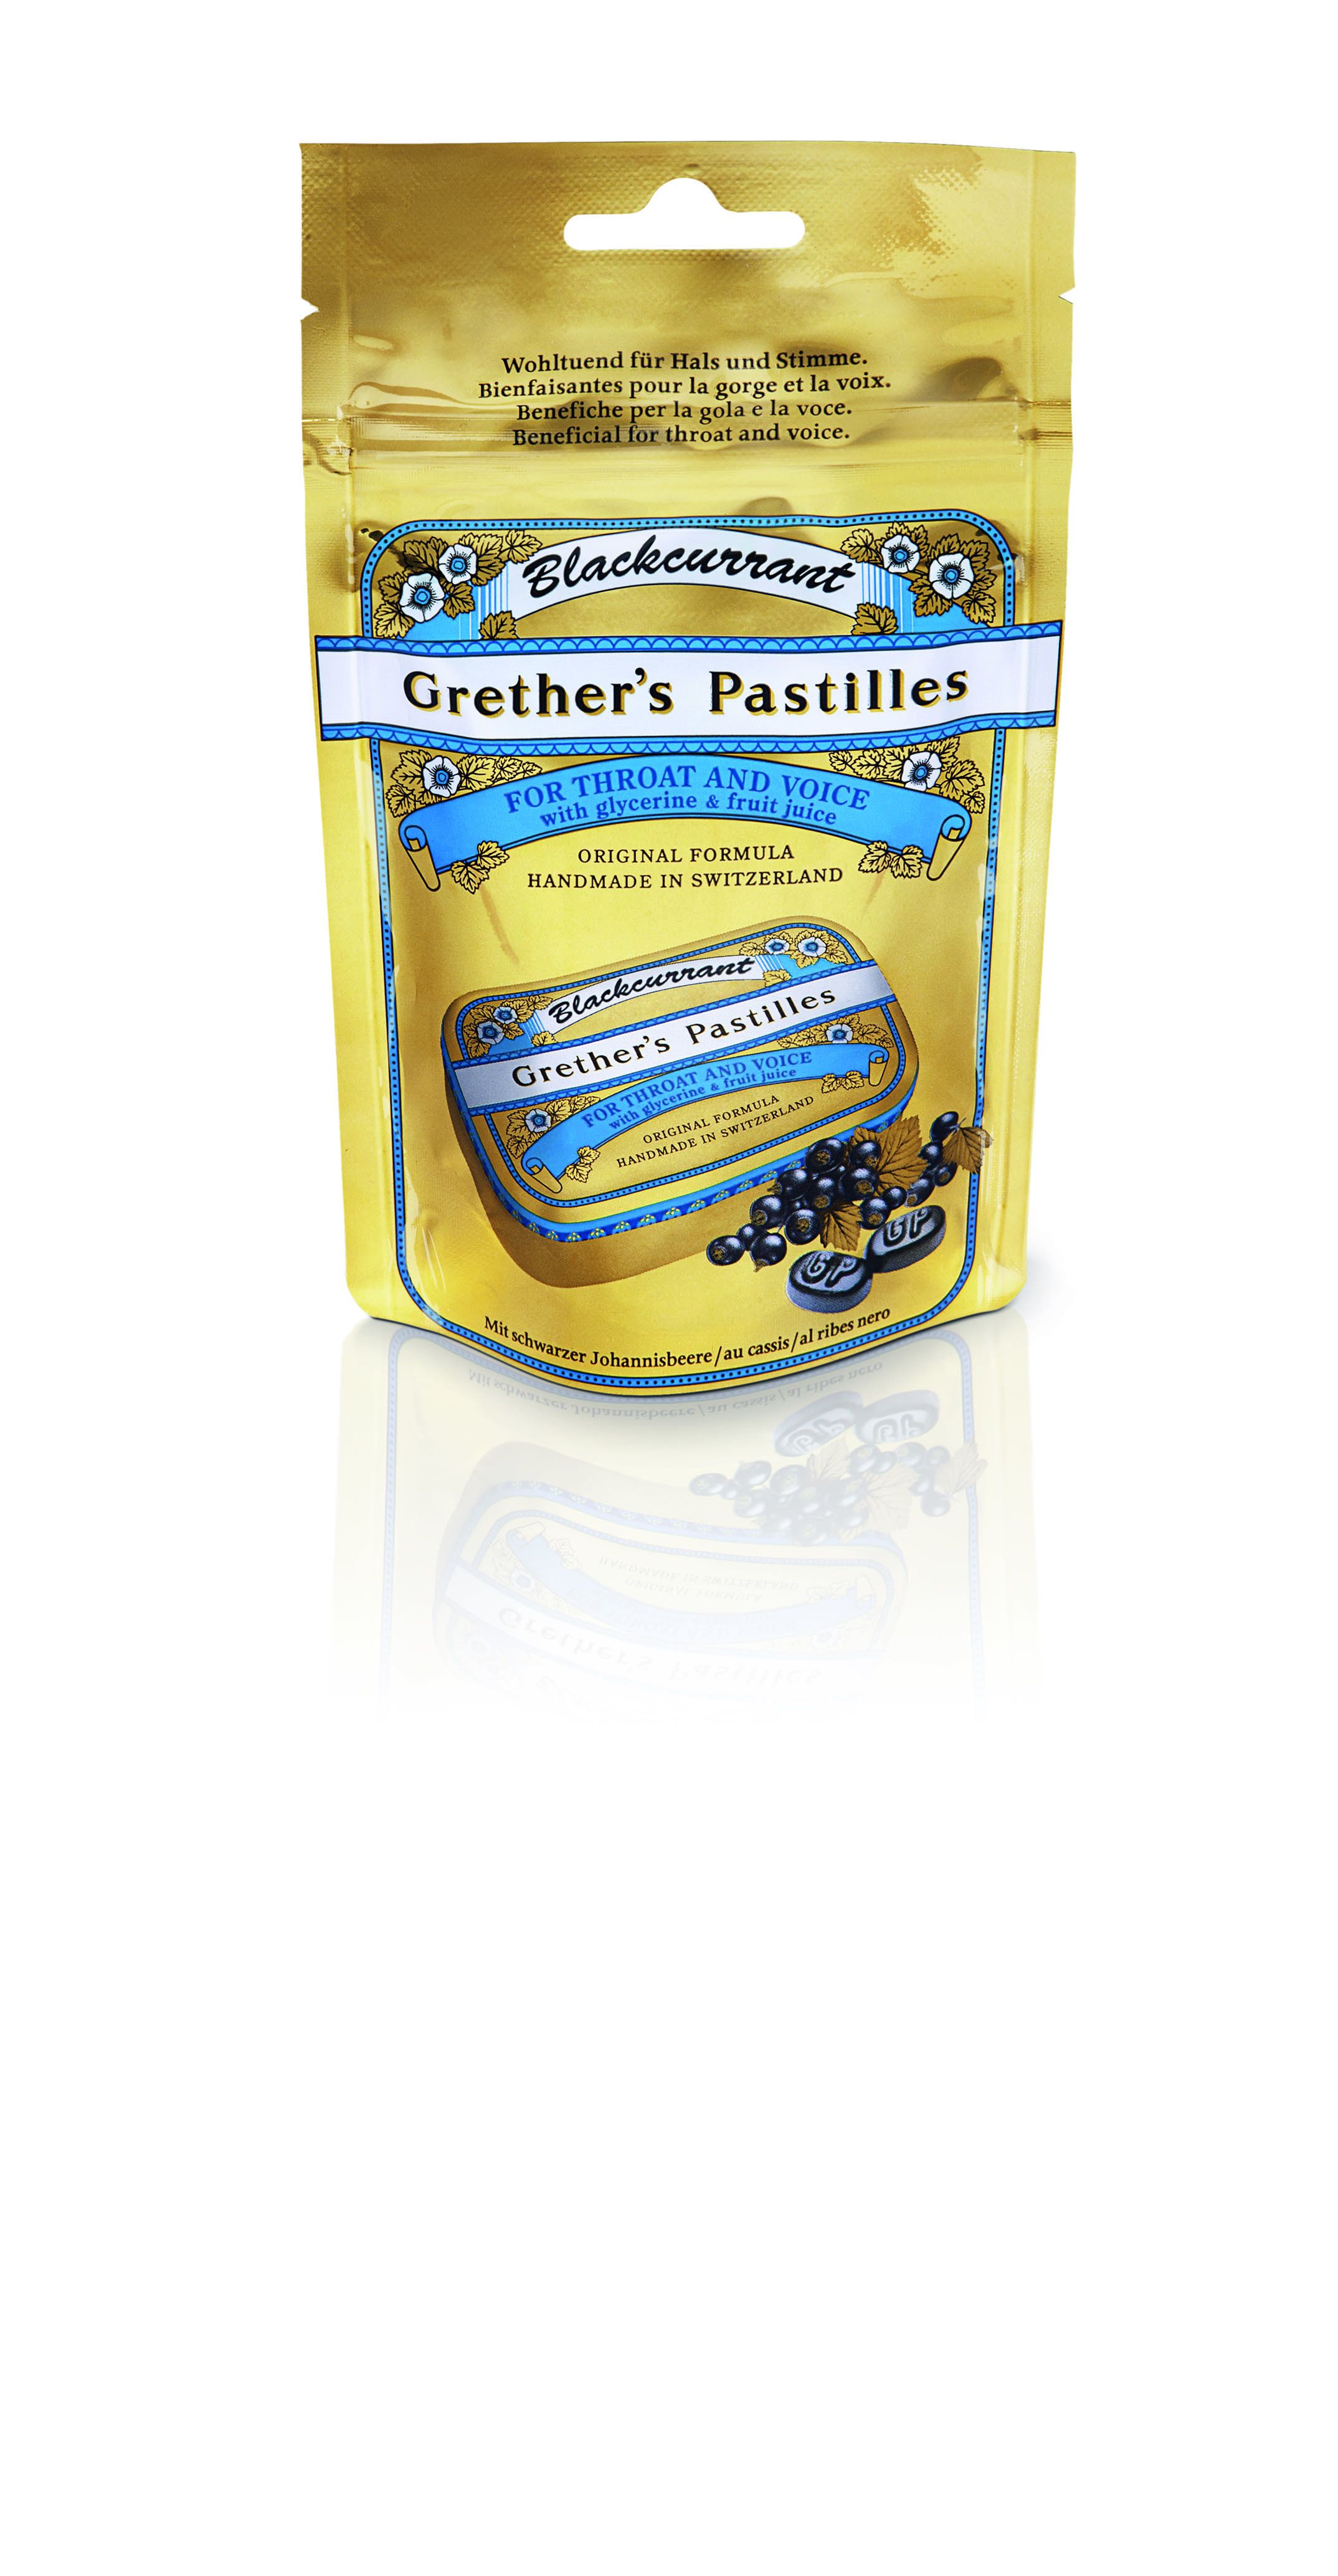 Grethers Blackcurrant Gold zuckerhaltige Pastillen Beutel 100g